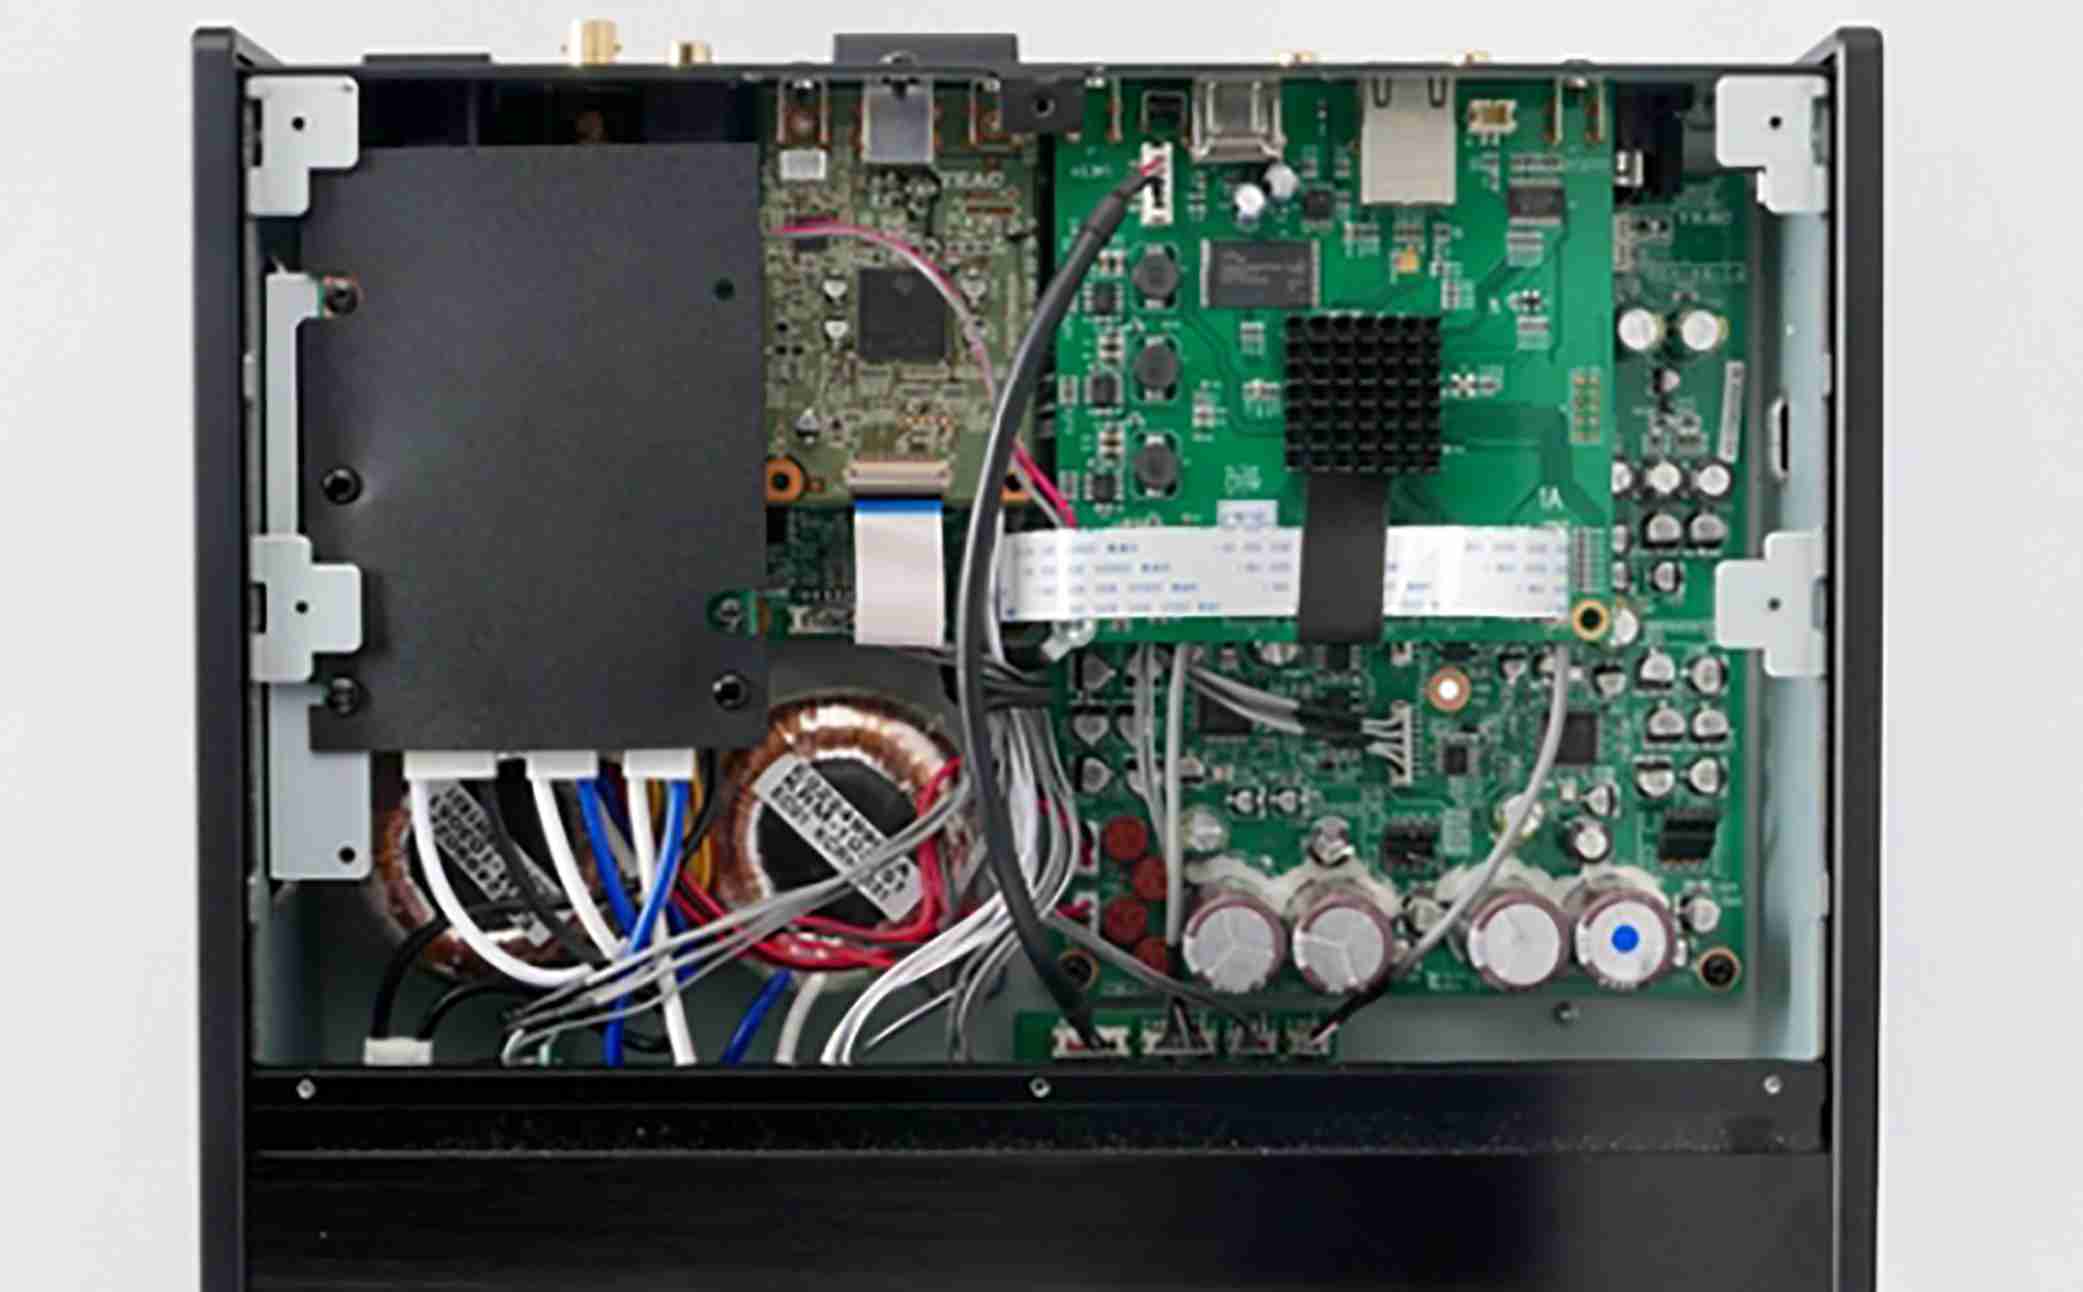 TEAC NT-505 銀 USB DAC/ 網路播放器 | 金曲音響